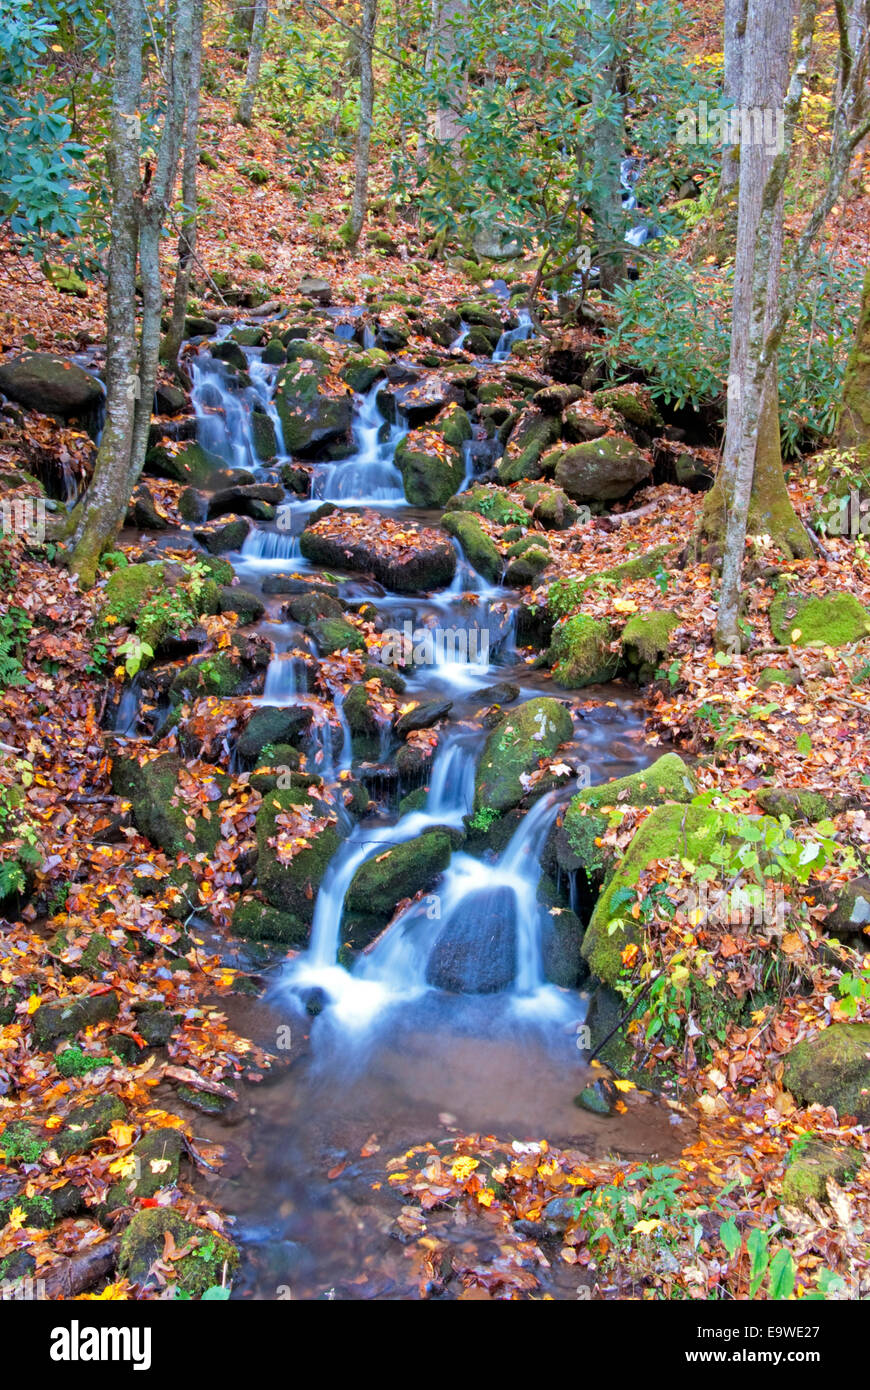 Stream durante el otoño en el Parque Nacional Great Smoky Mountains National Park. Foto de stock